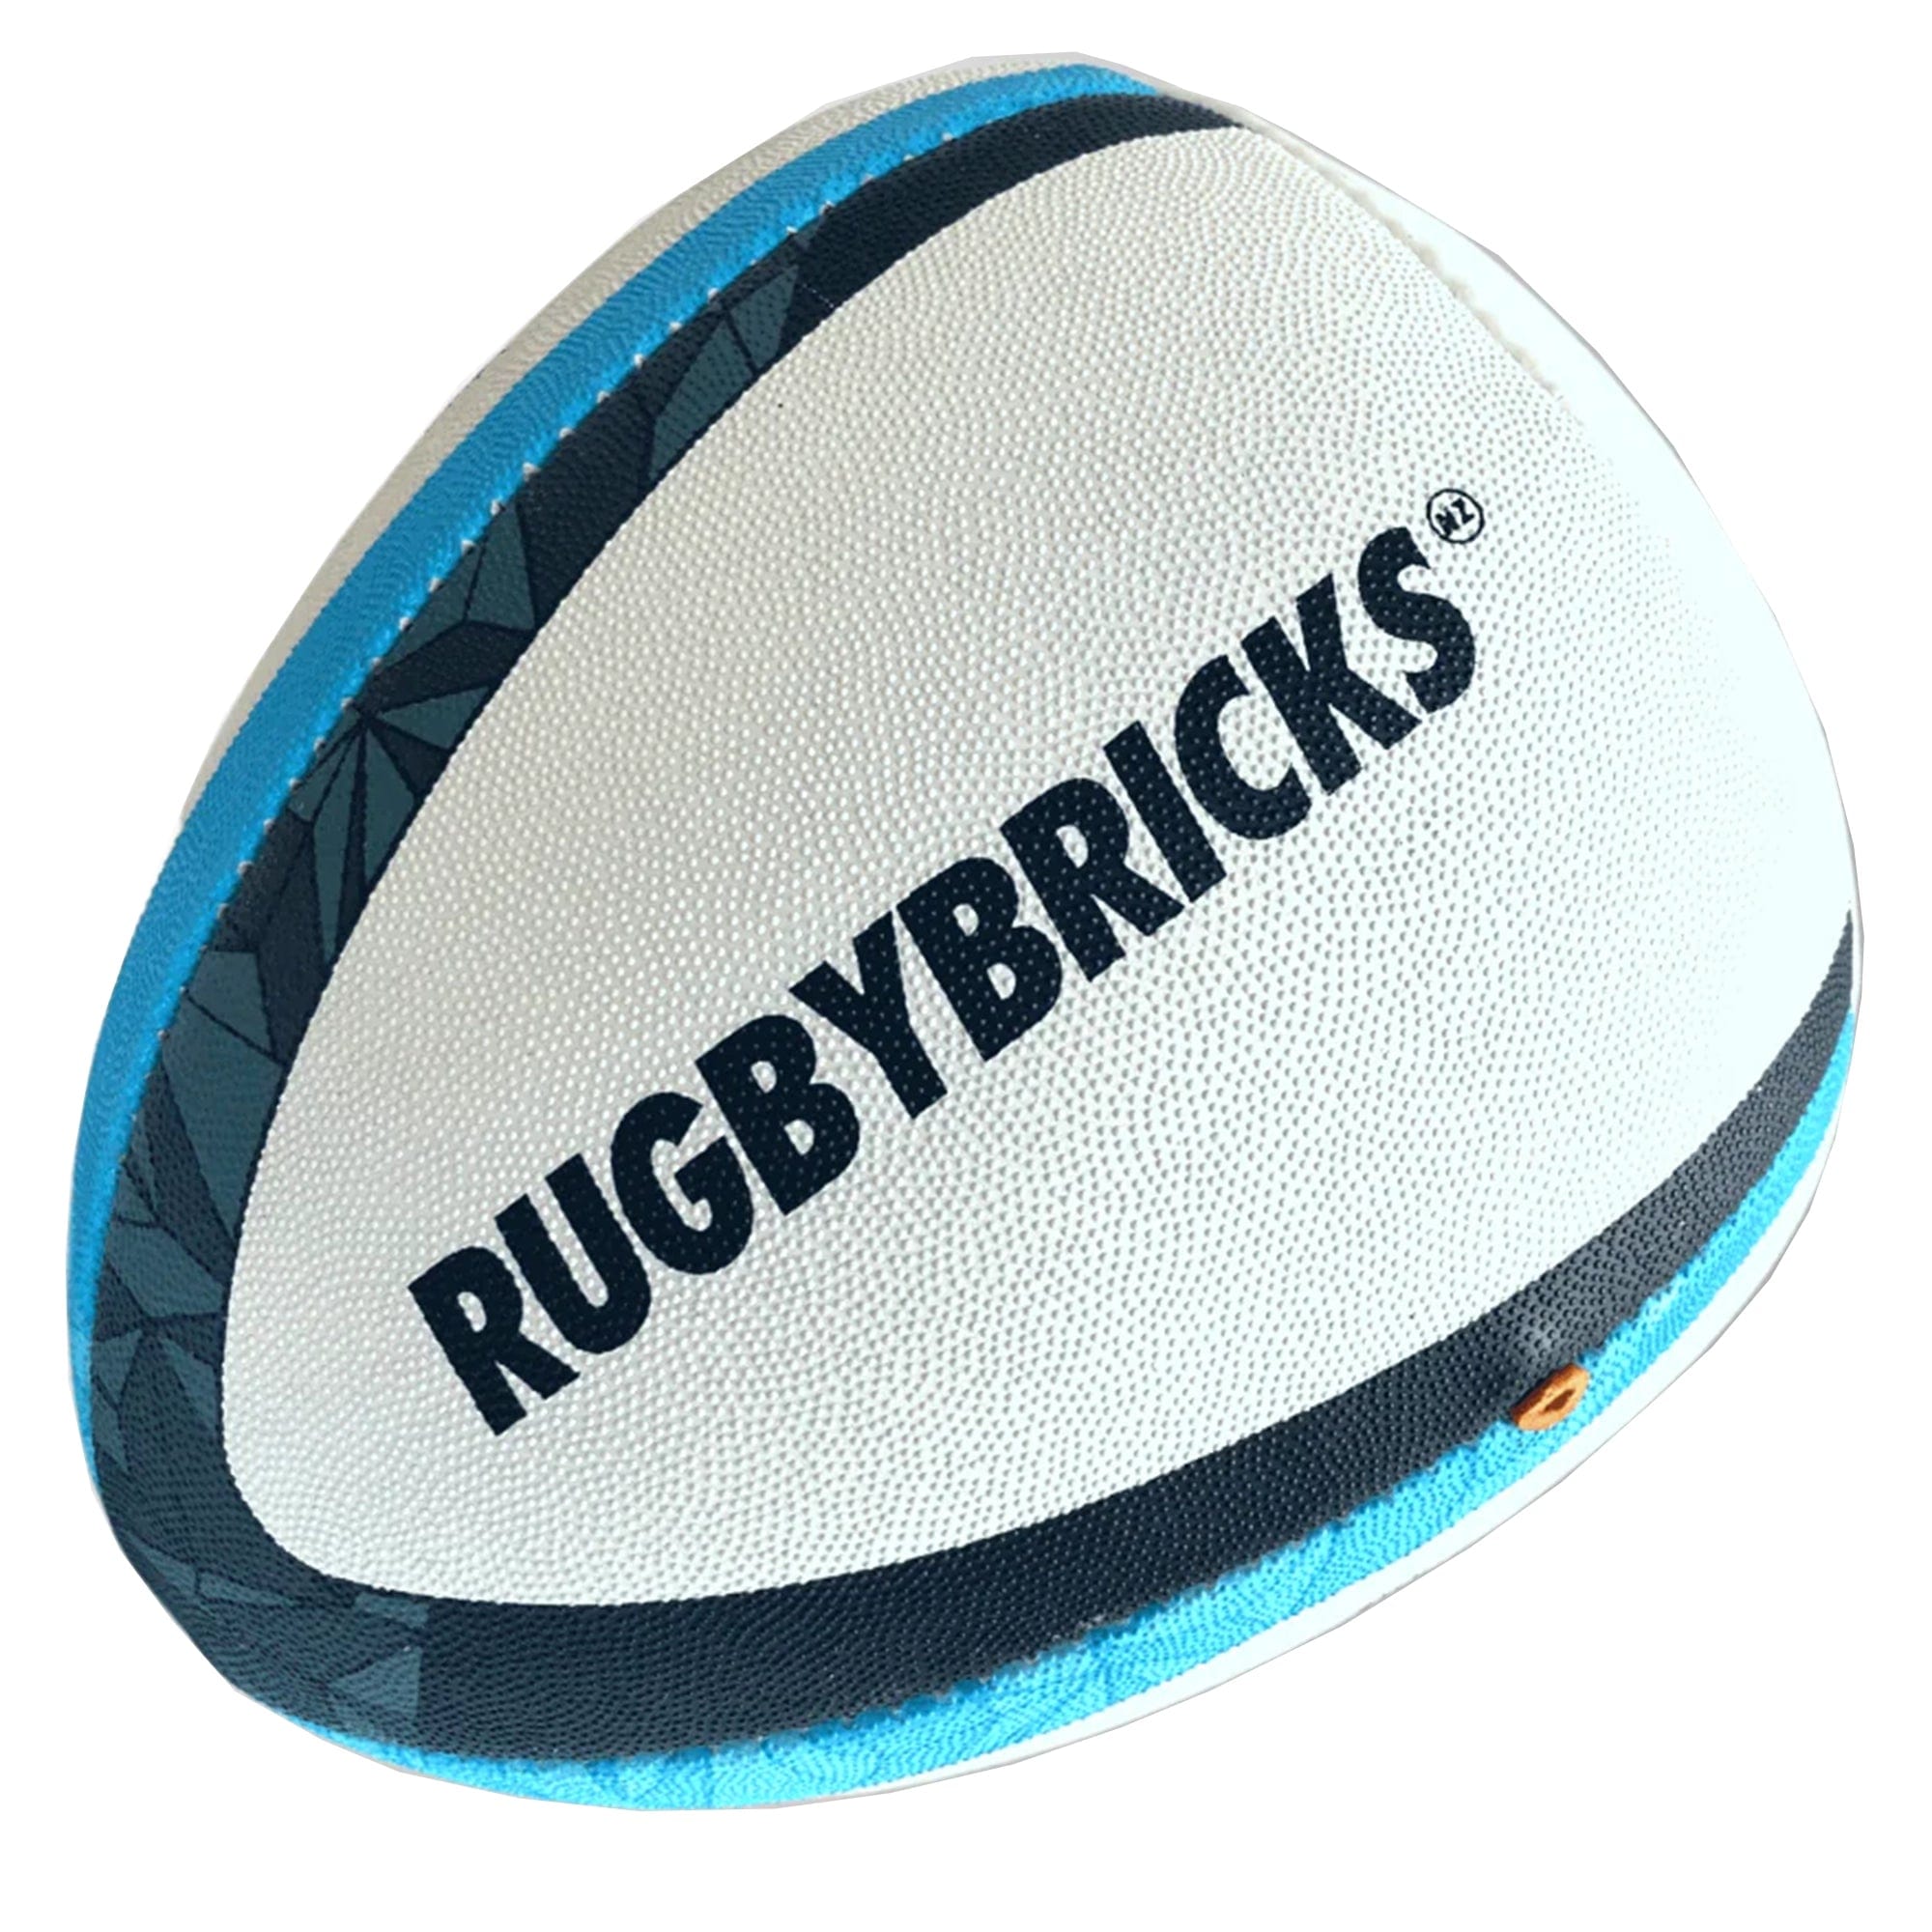 Rugby Bricks Vortex High Cut Kicking Tee - World Rugby Shop